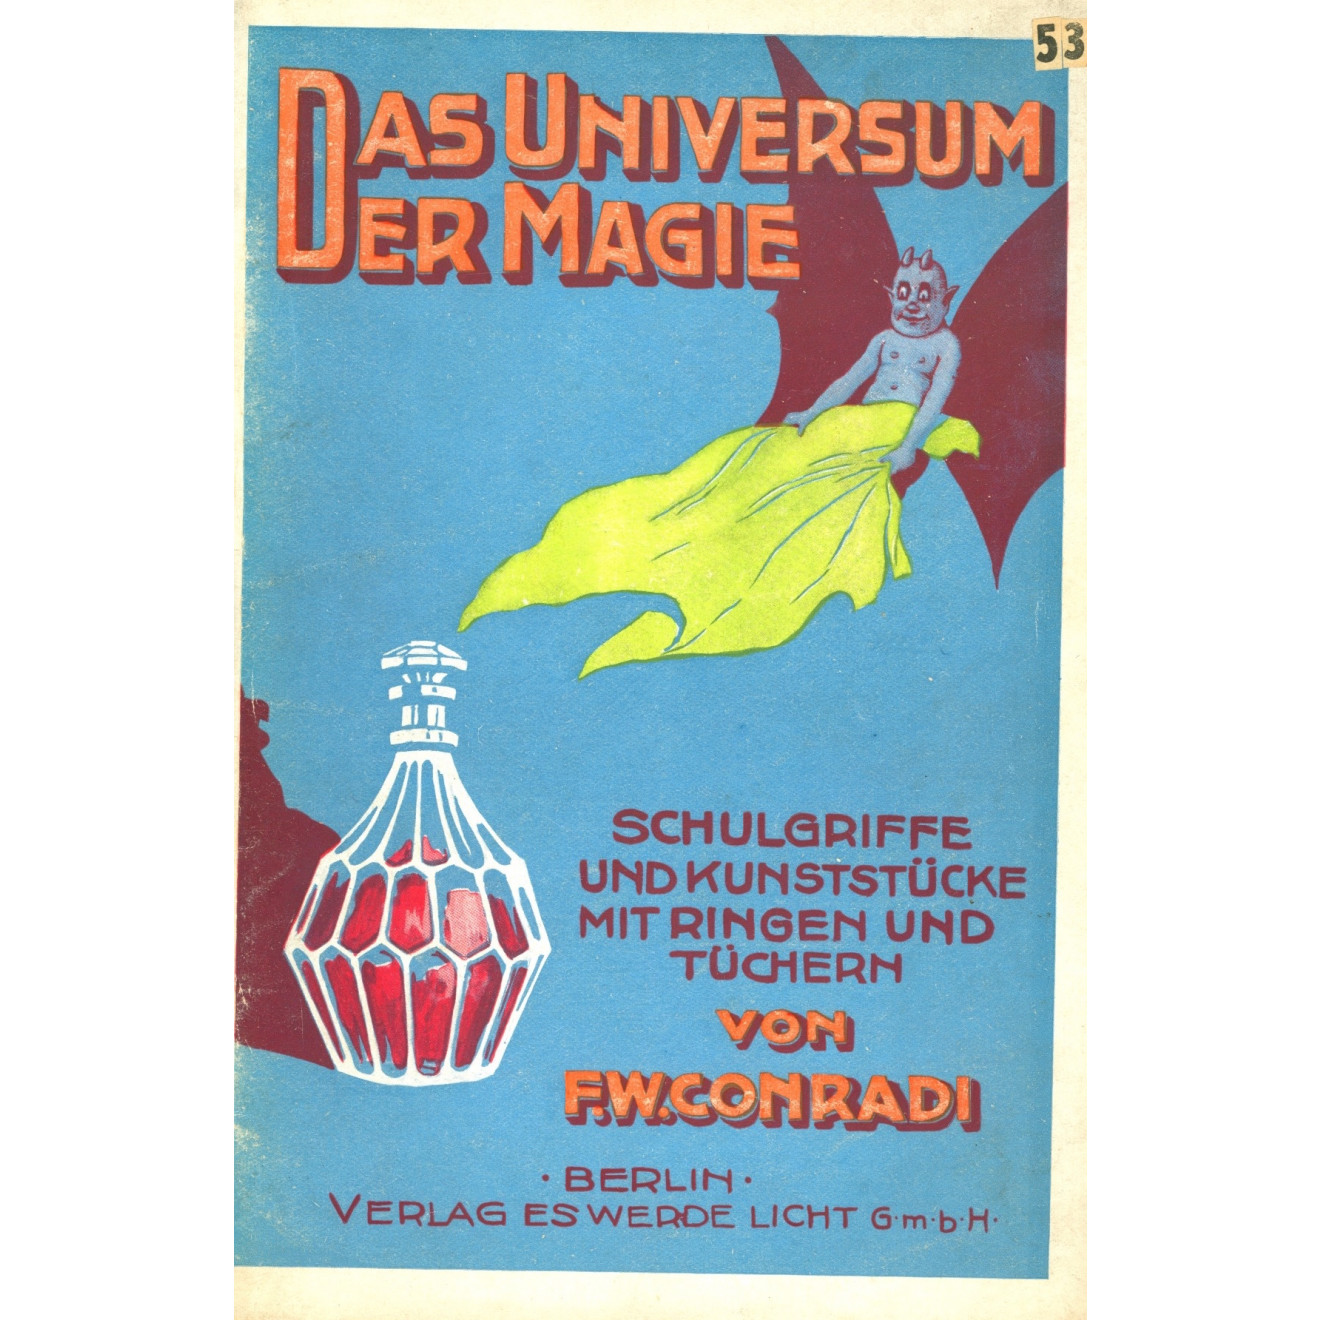 Das Universum der Magie, Magische Bibliothek, 19. Band